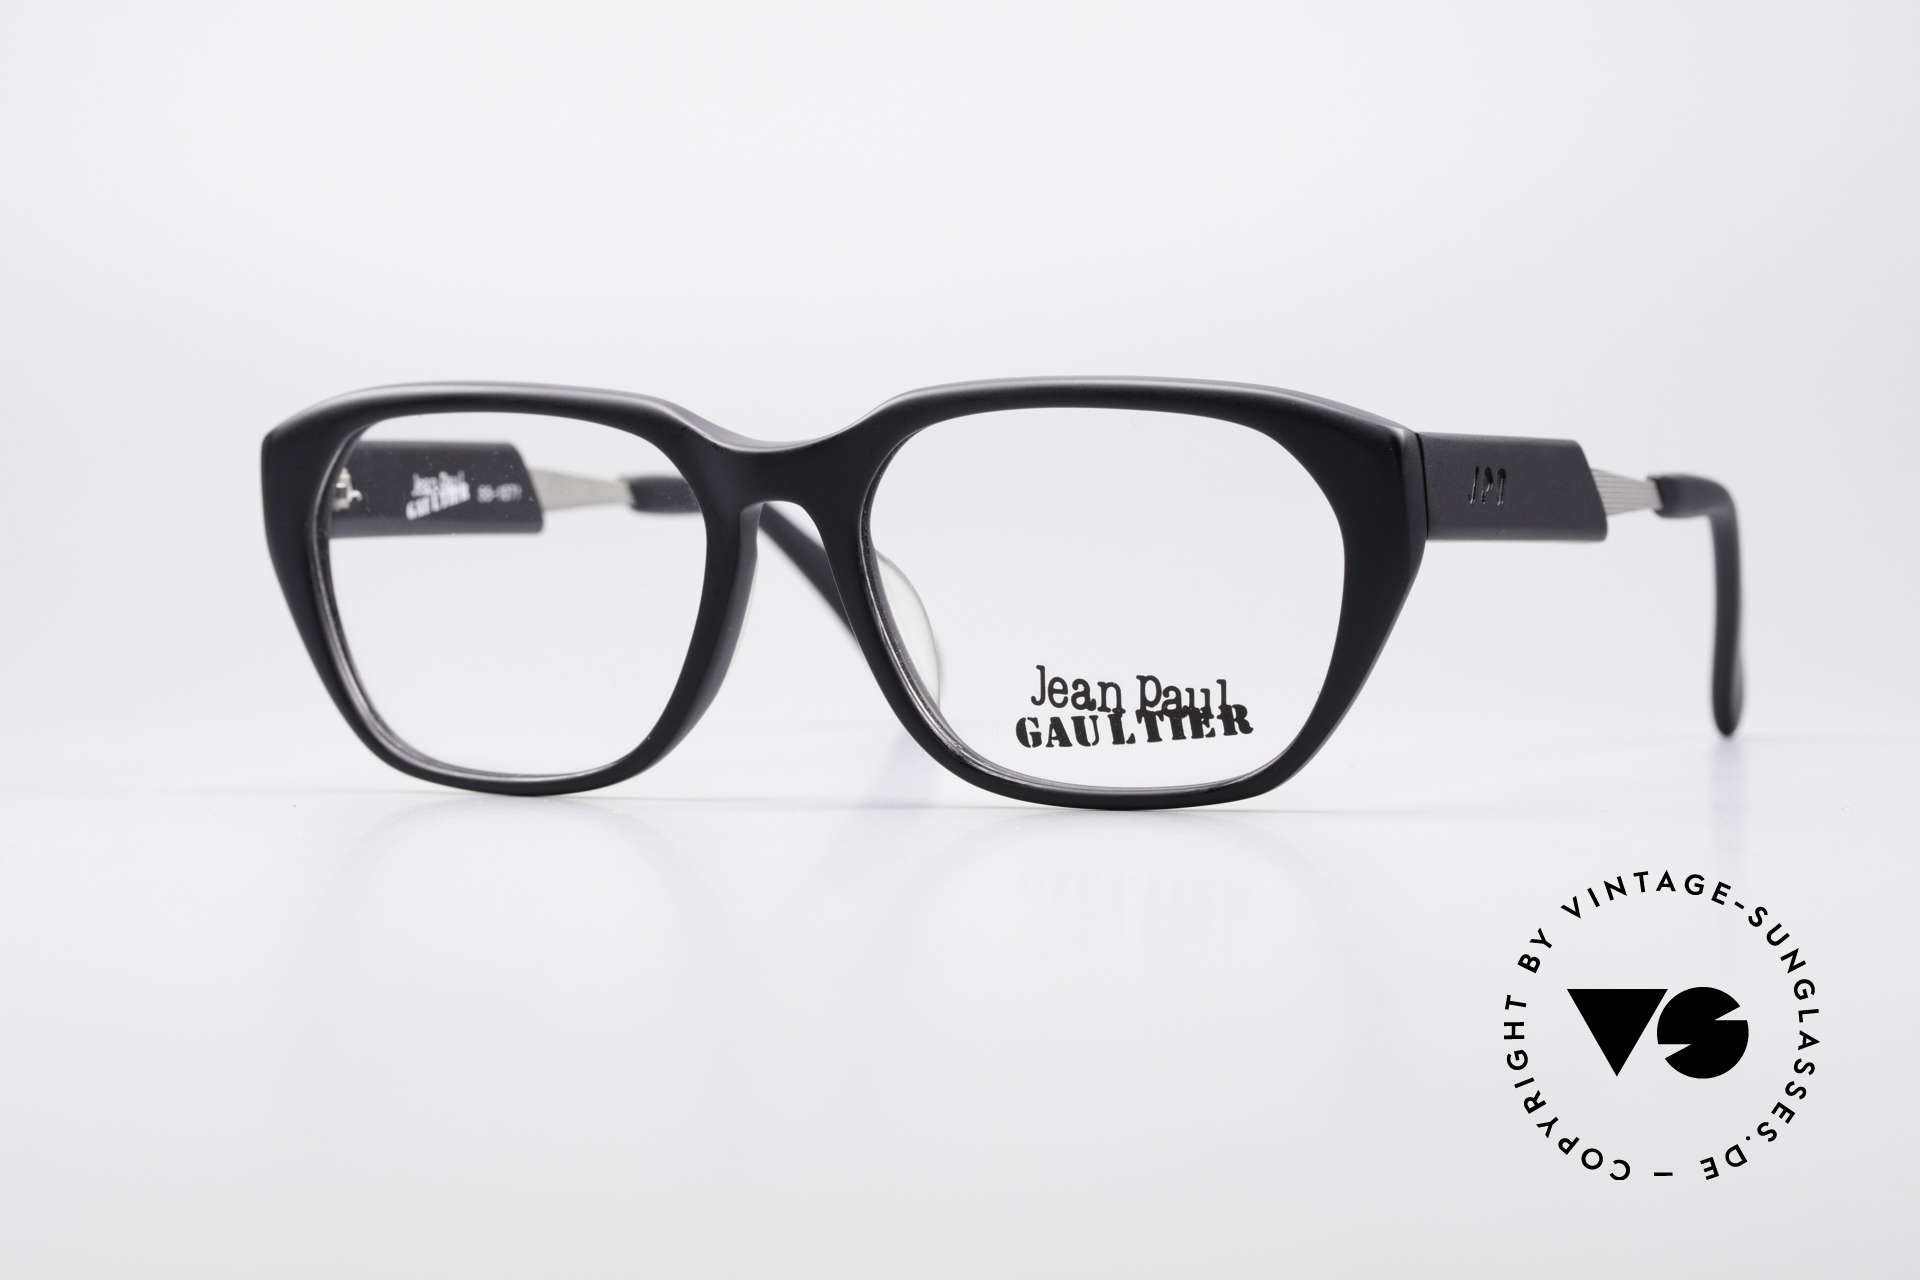 Jean Paul Gaultier 55-1071 Designer 90's Eyeglasses, 1990s vintage designer eyeglasses by Jean P. Gaultier, Made for Men and Women